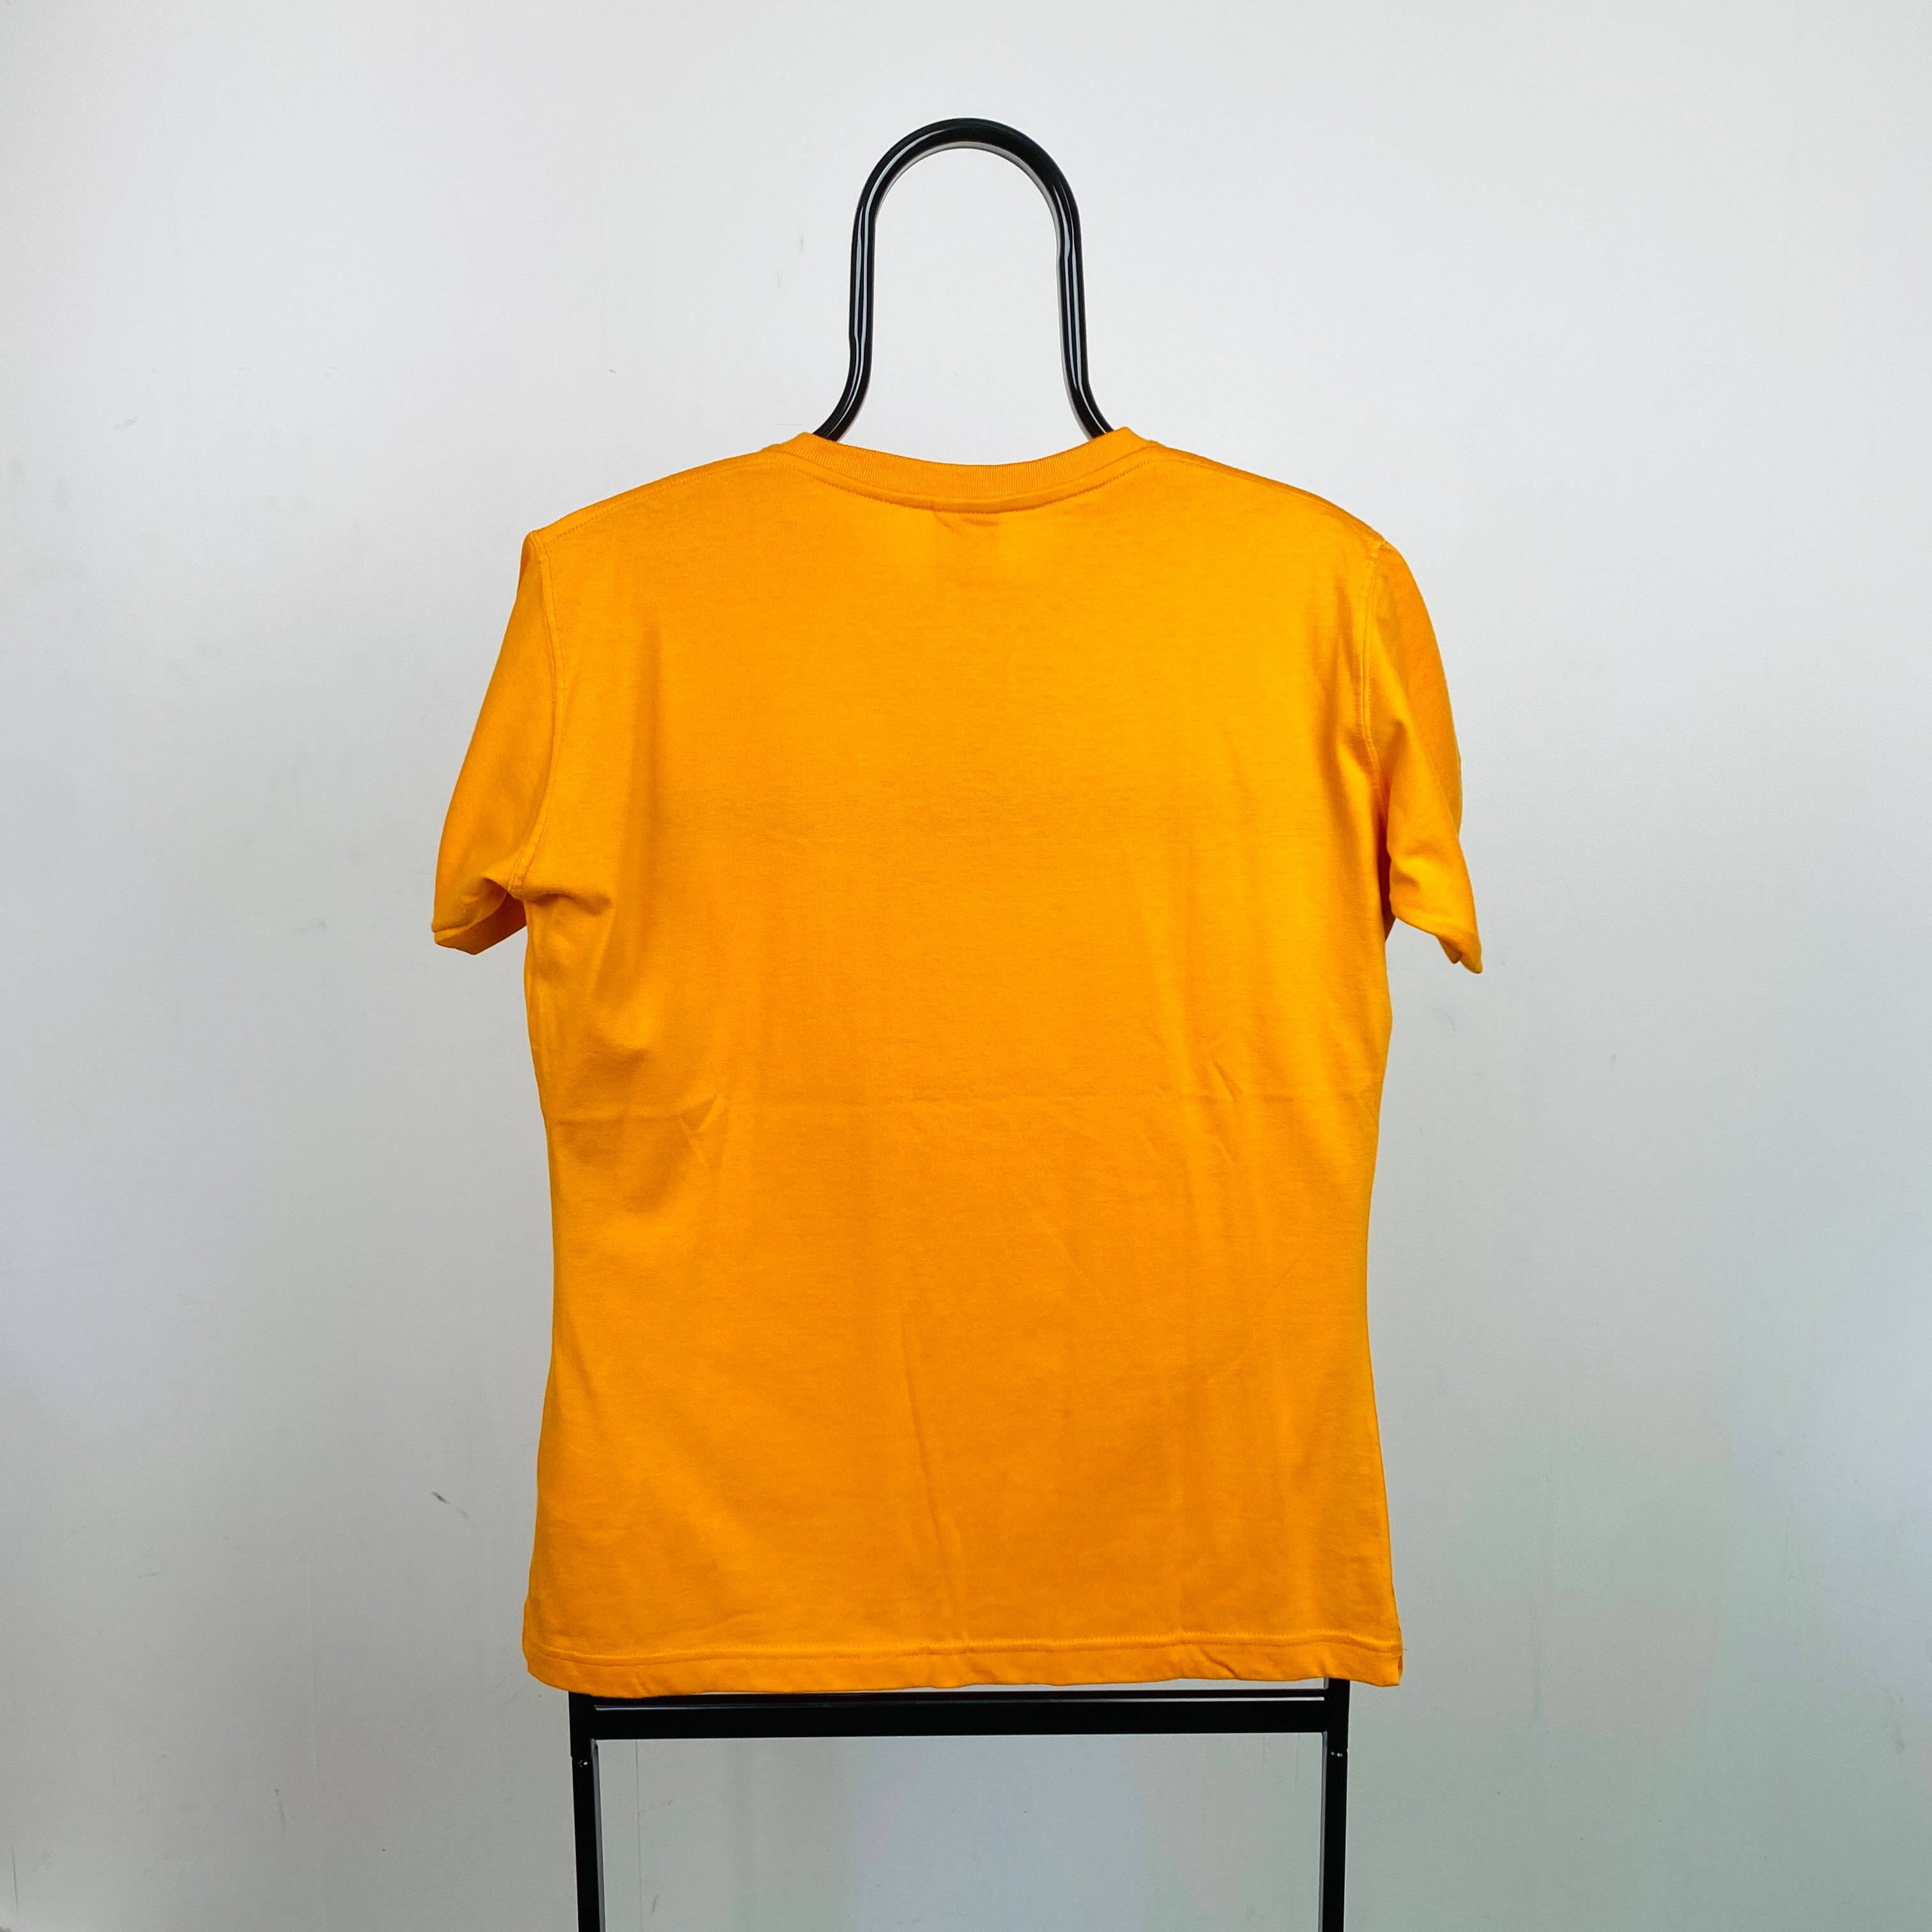 90s Nike T-Shirt Orange Medium